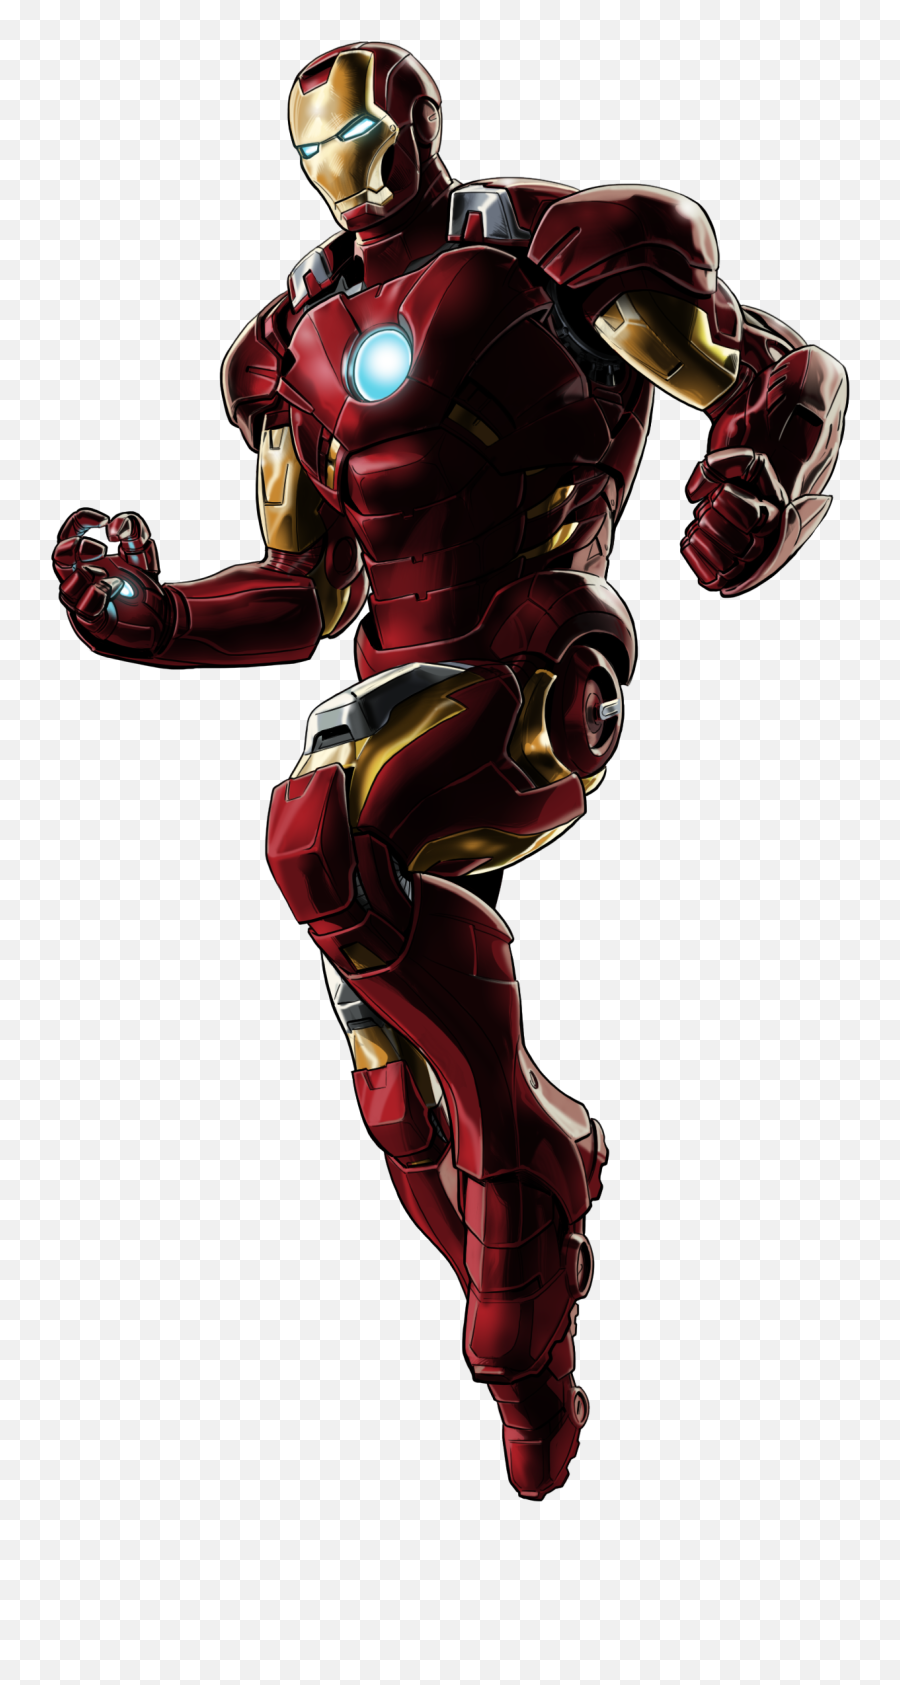 Iron Man Png Transparent Images 22 - Transparent Background Iron Man Png,Iron Man Transparent